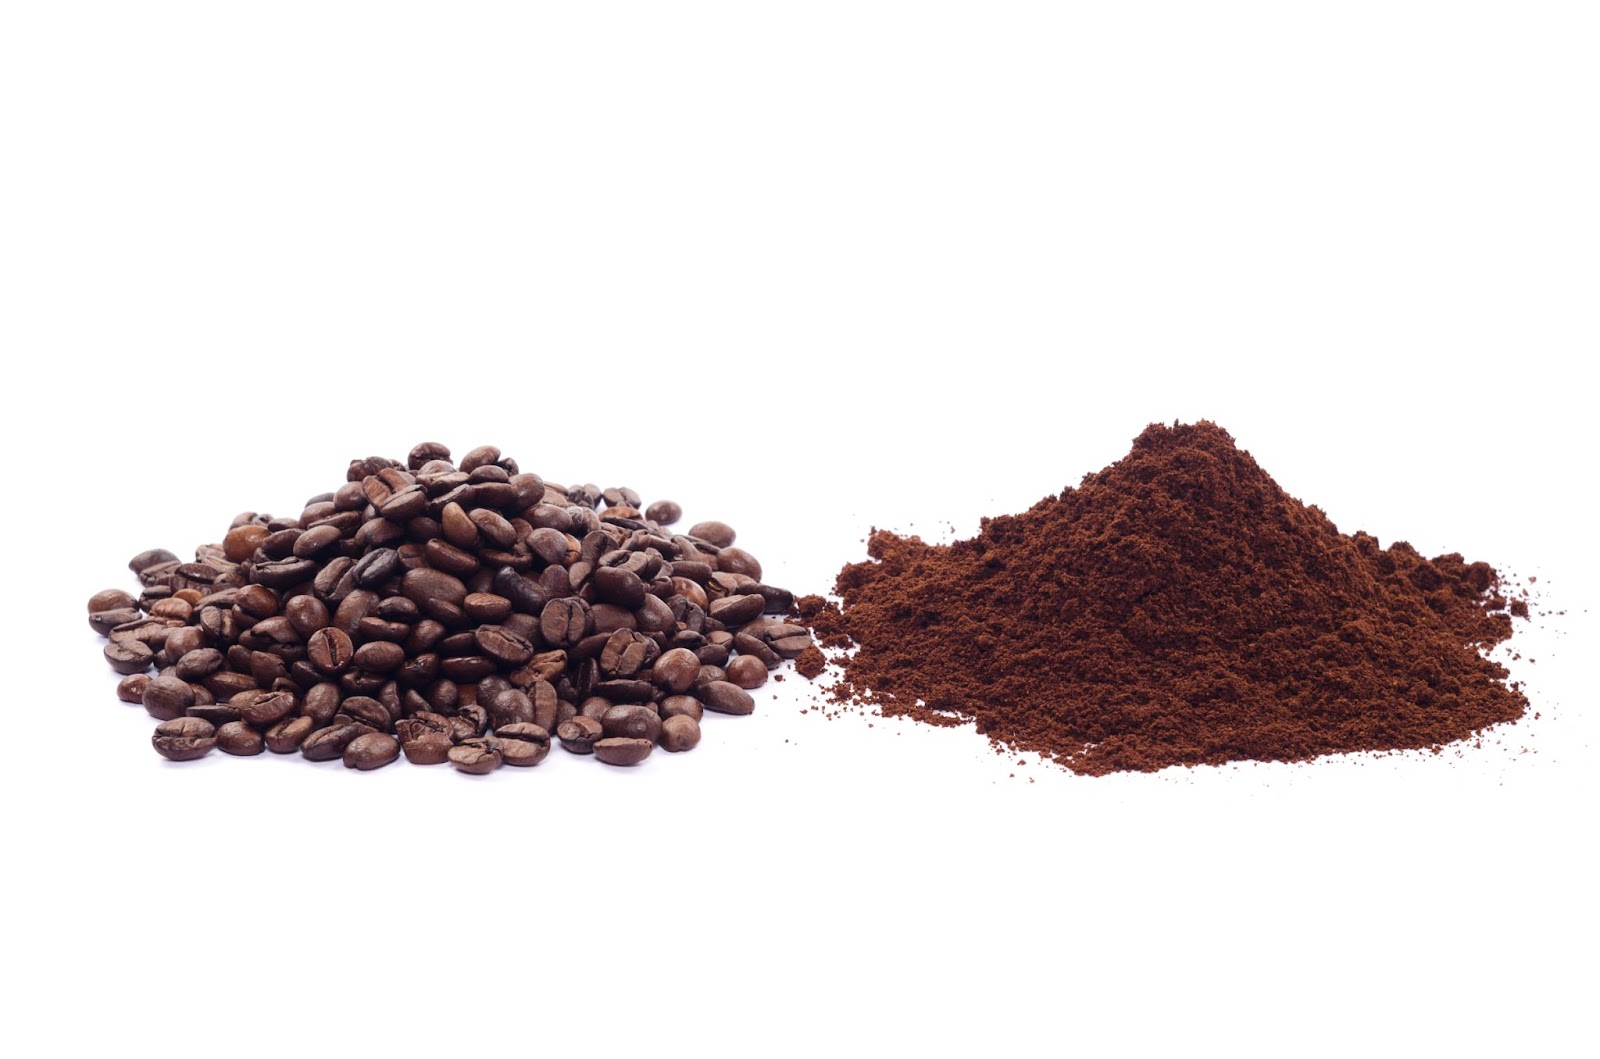 دليل شامل للمبتدئين لاختيار حبوب القهوة